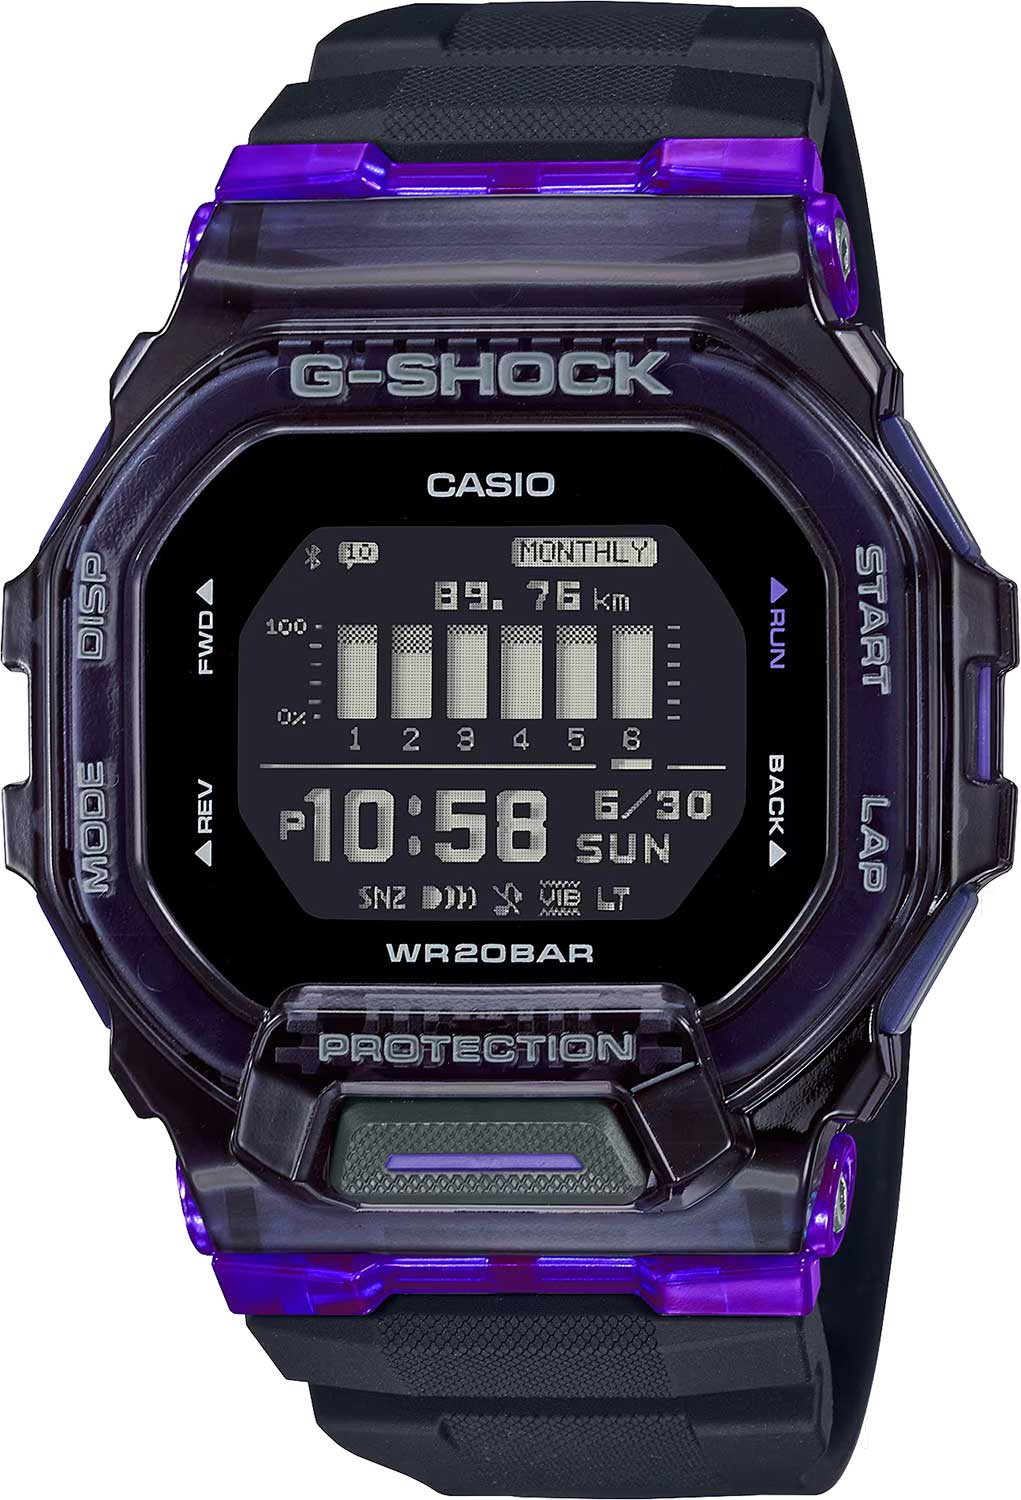     Casio G-SHOCK GBD-200SM-1A6  